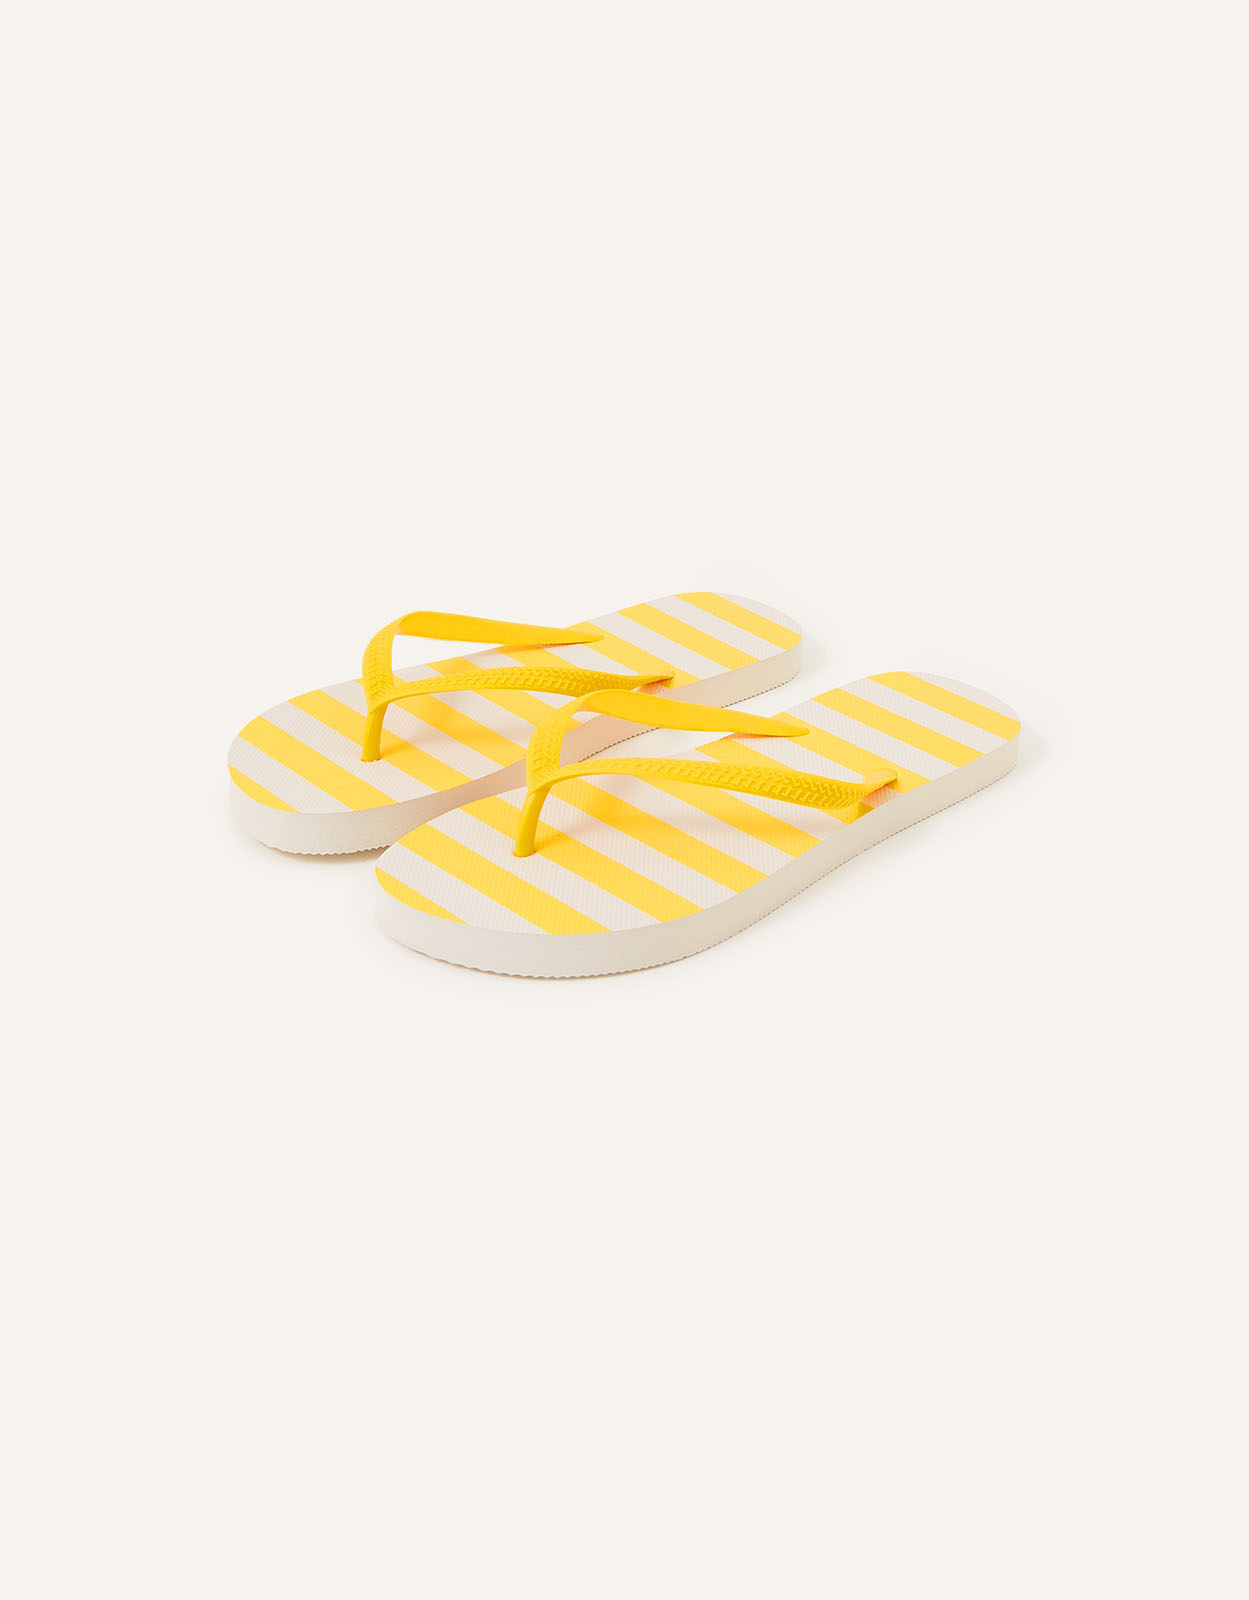 Accessorize Women's Stripe Flip Flops Yellow, Size: L